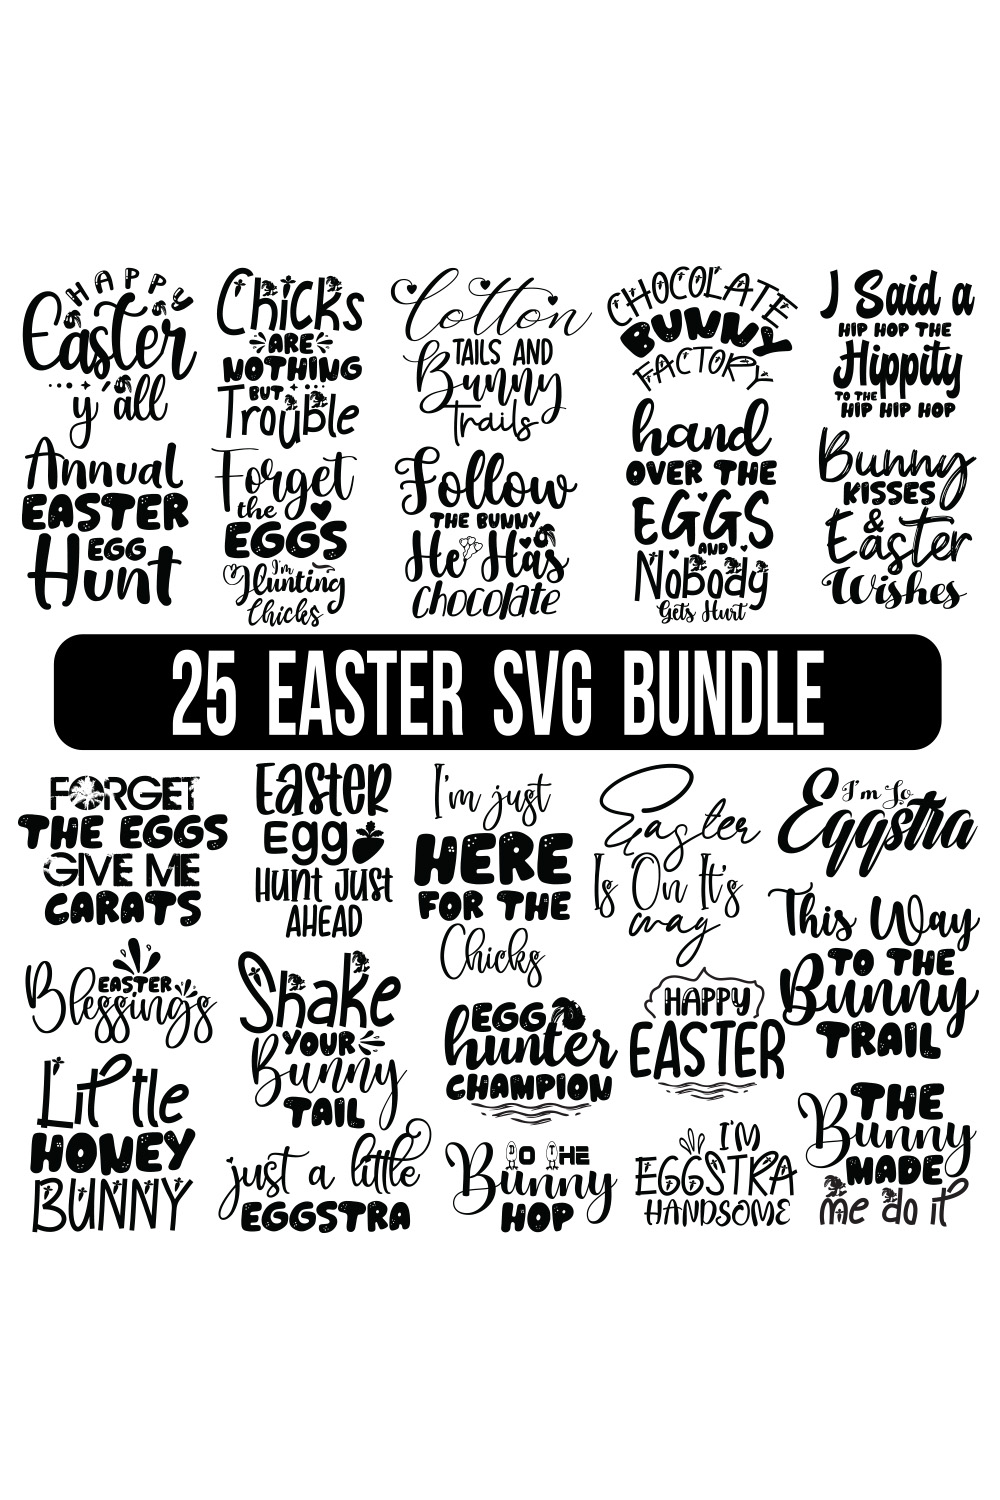 Happy Easter SVG Bundle, Easter SVG, Digital Files, Easter quotes, Easter Bunny svg, Easter Egg svg, pinterest preview image.